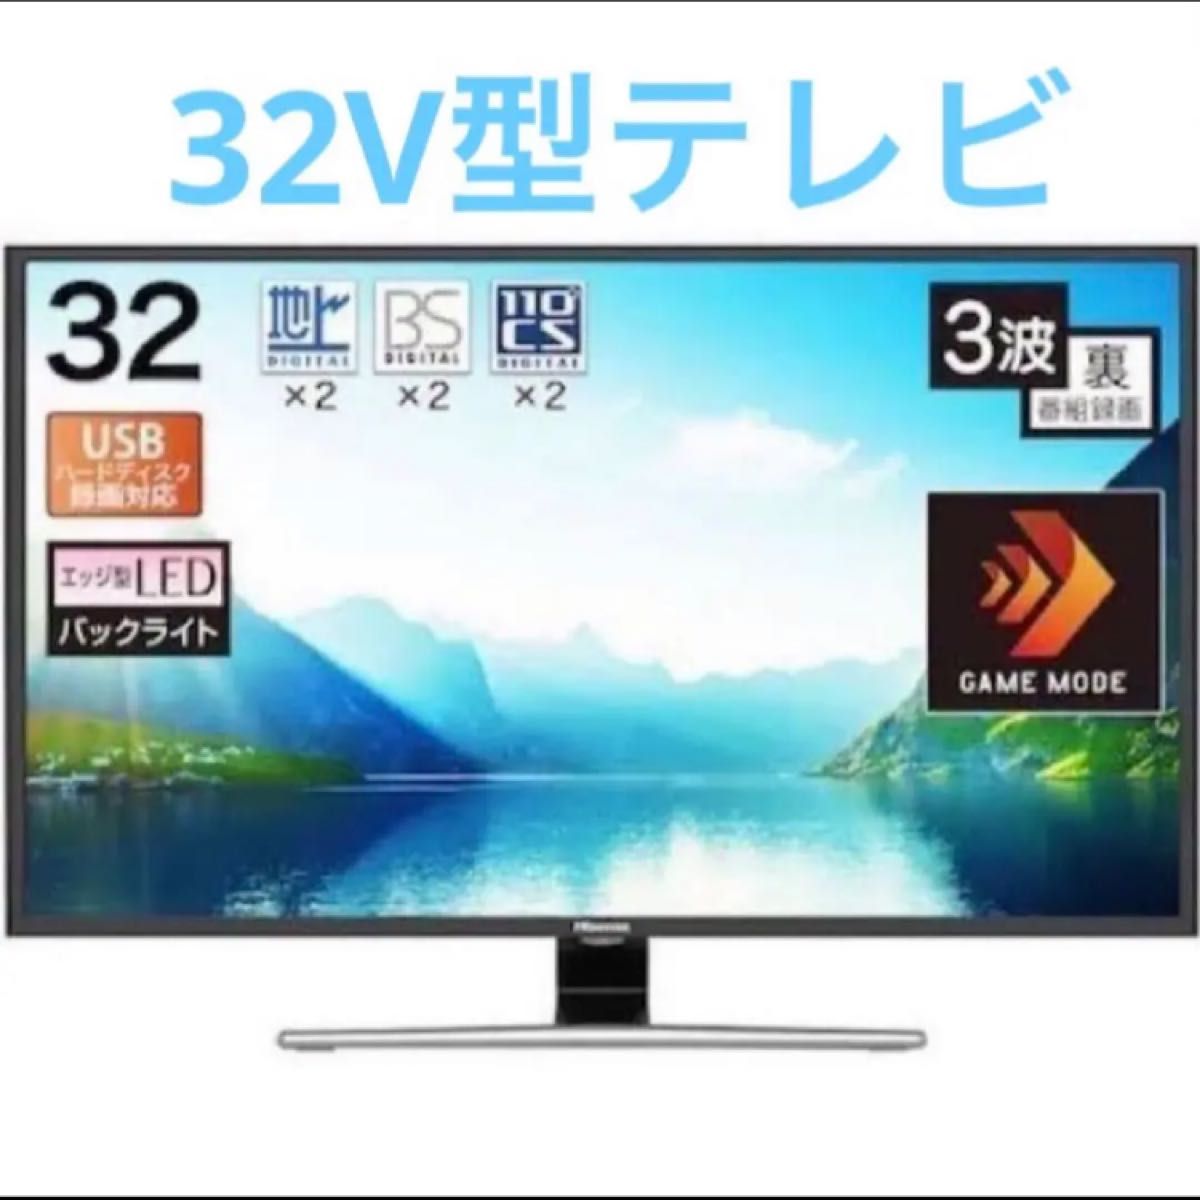 Hisense(ハイセンス) 32V型液晶テレビ HJ32A5800-